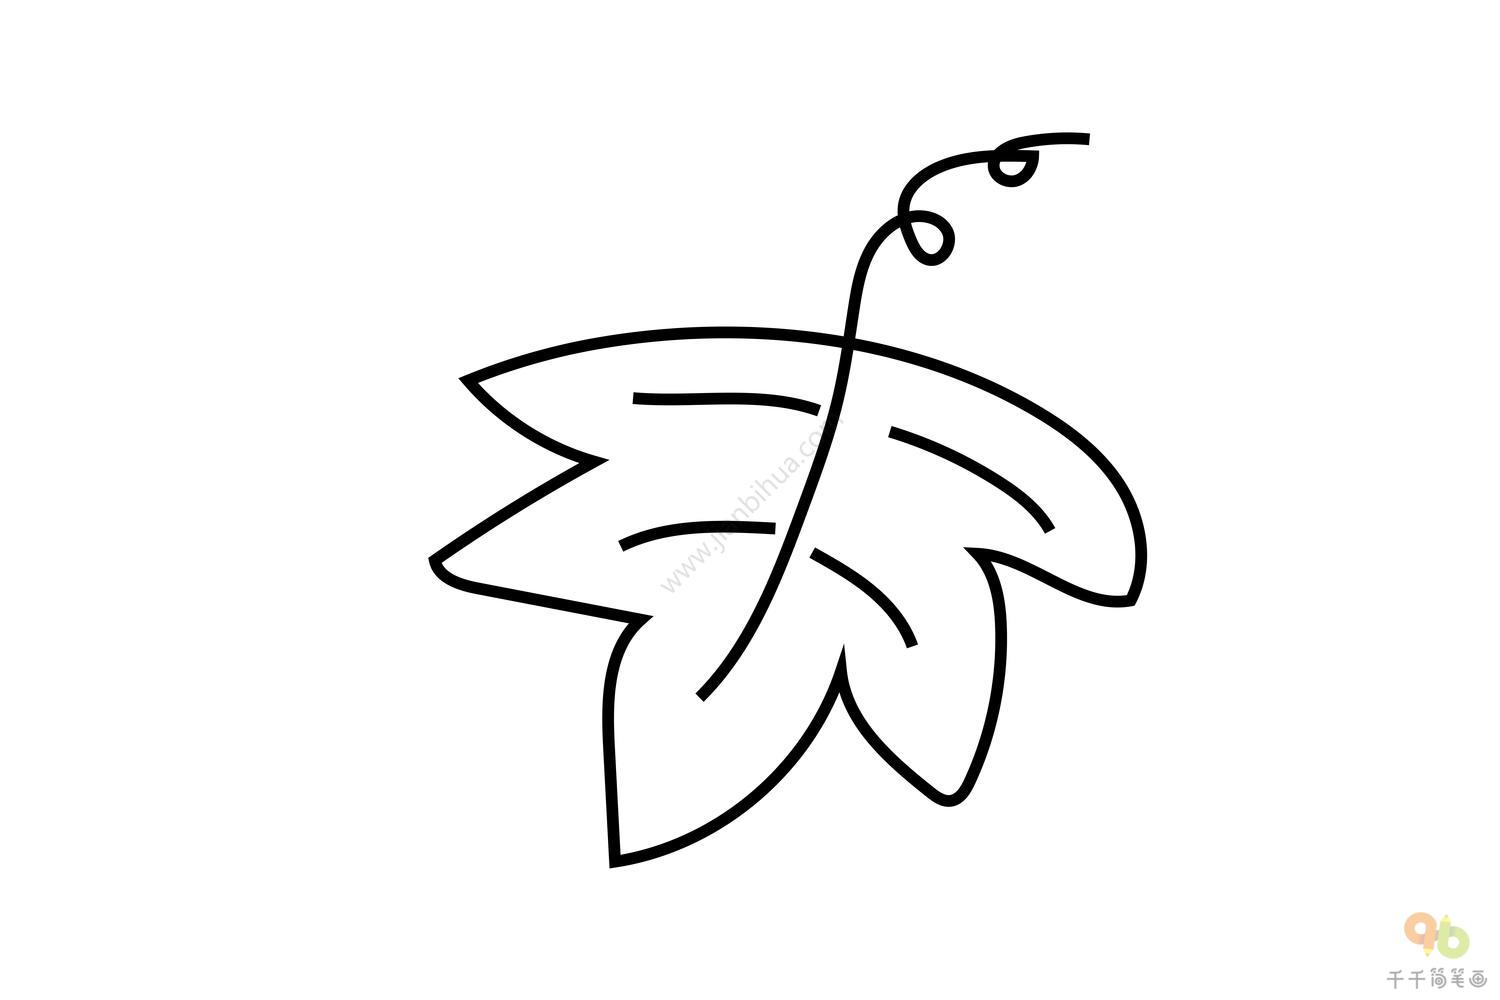 植物简笔画 关于树叶的简笔画图片 - 学院 - 摸鱼网 - Σ(っ °Д °;)っ 让世界更萌~ mooyuu.com